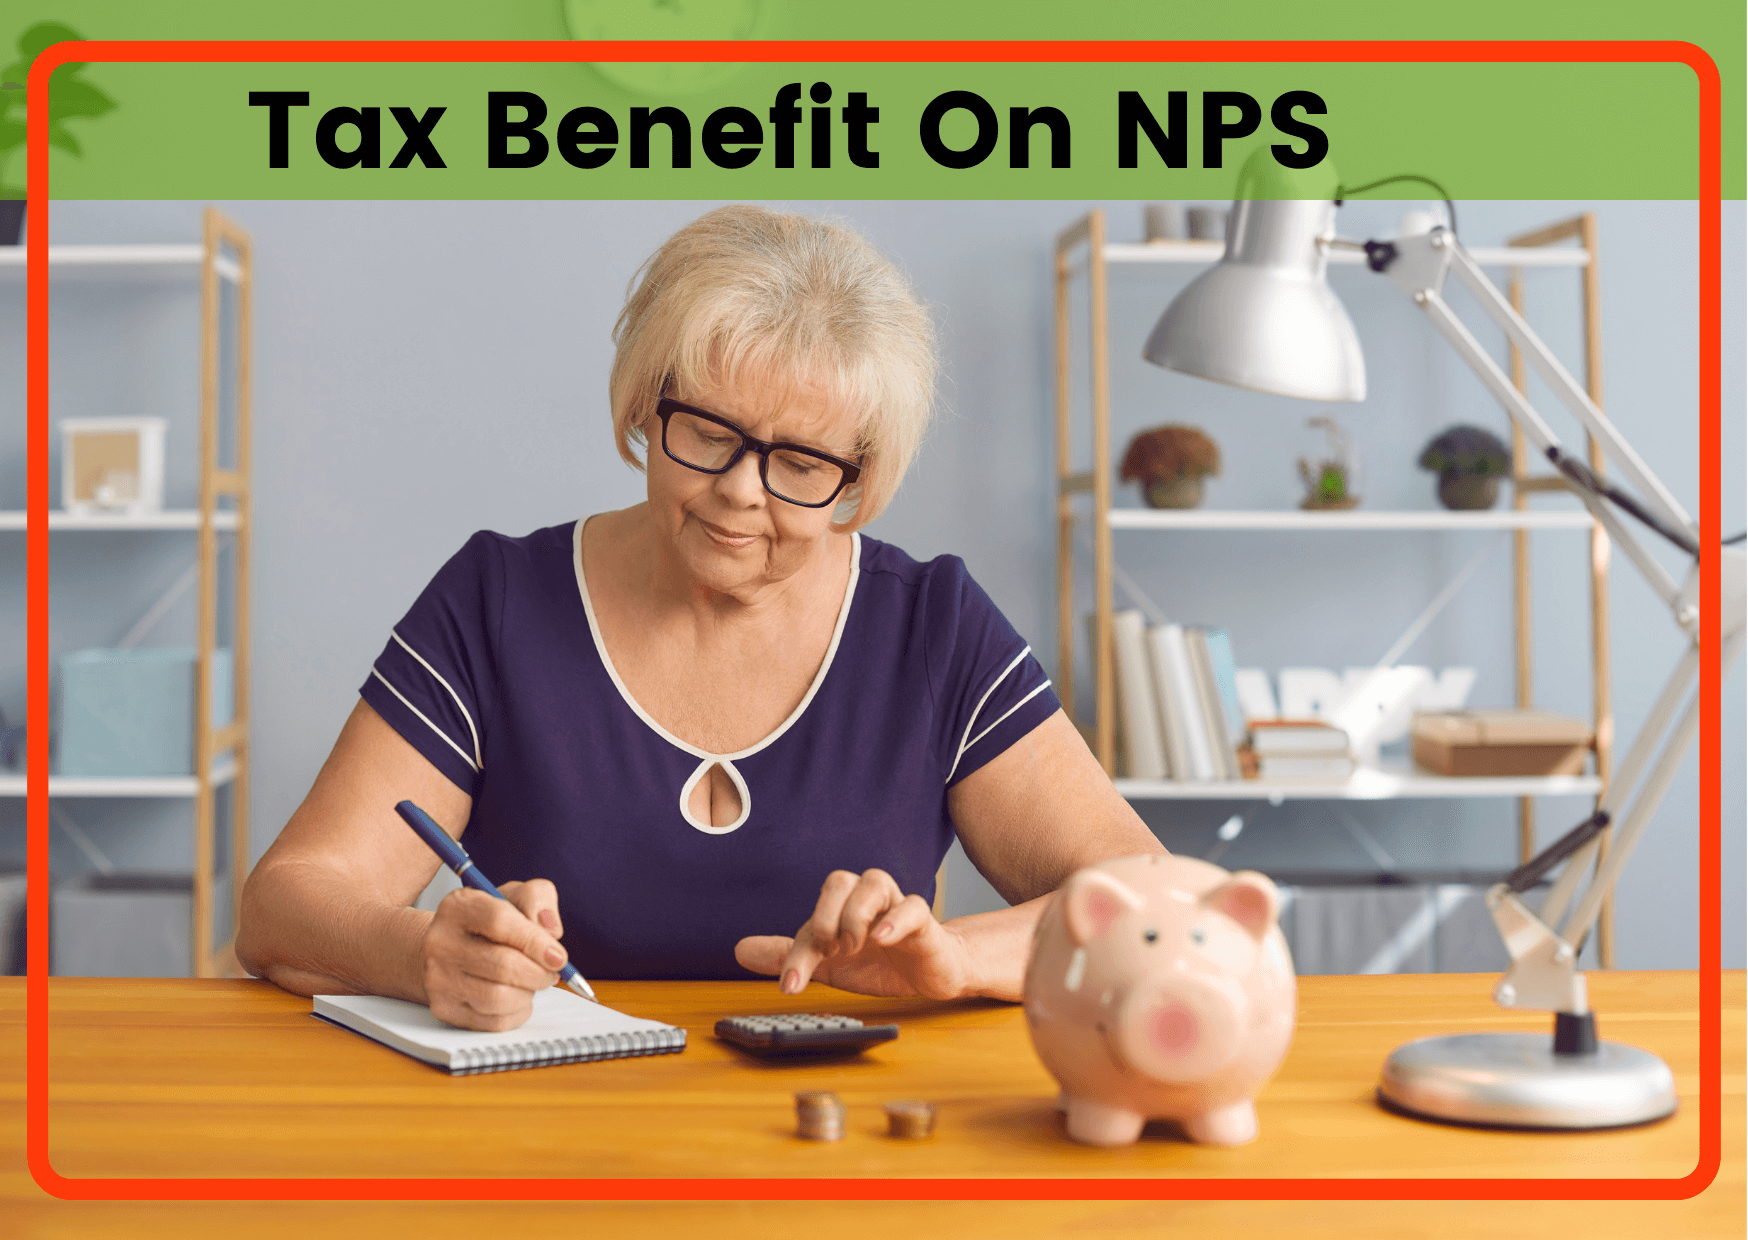 Nps Tax Benefit 80ccd 1b